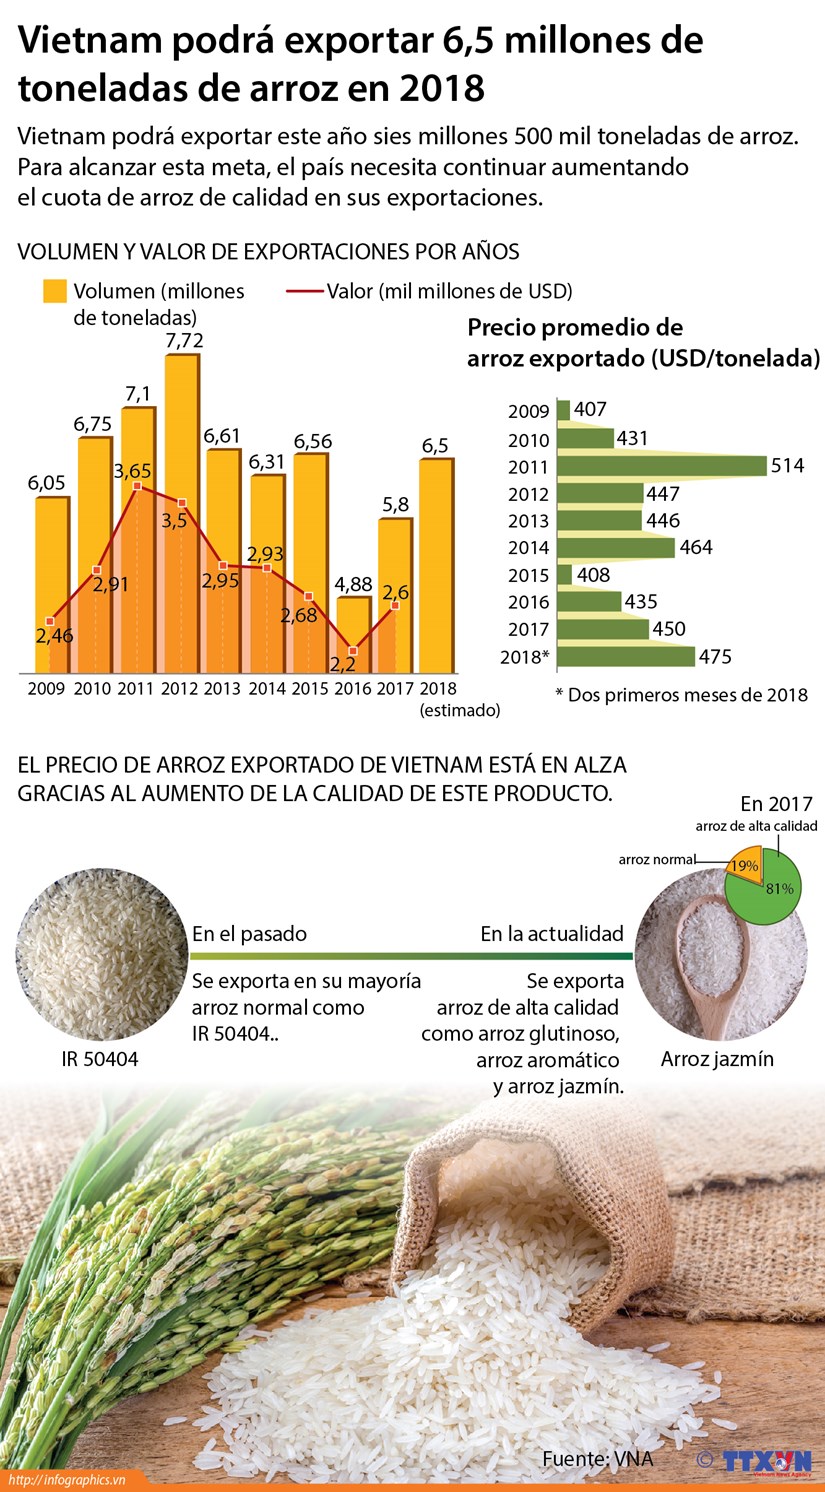 [Infografia] Vietnam podra exportar 6,5 millones de toneladas de arroz en 2018 hinh anh 1